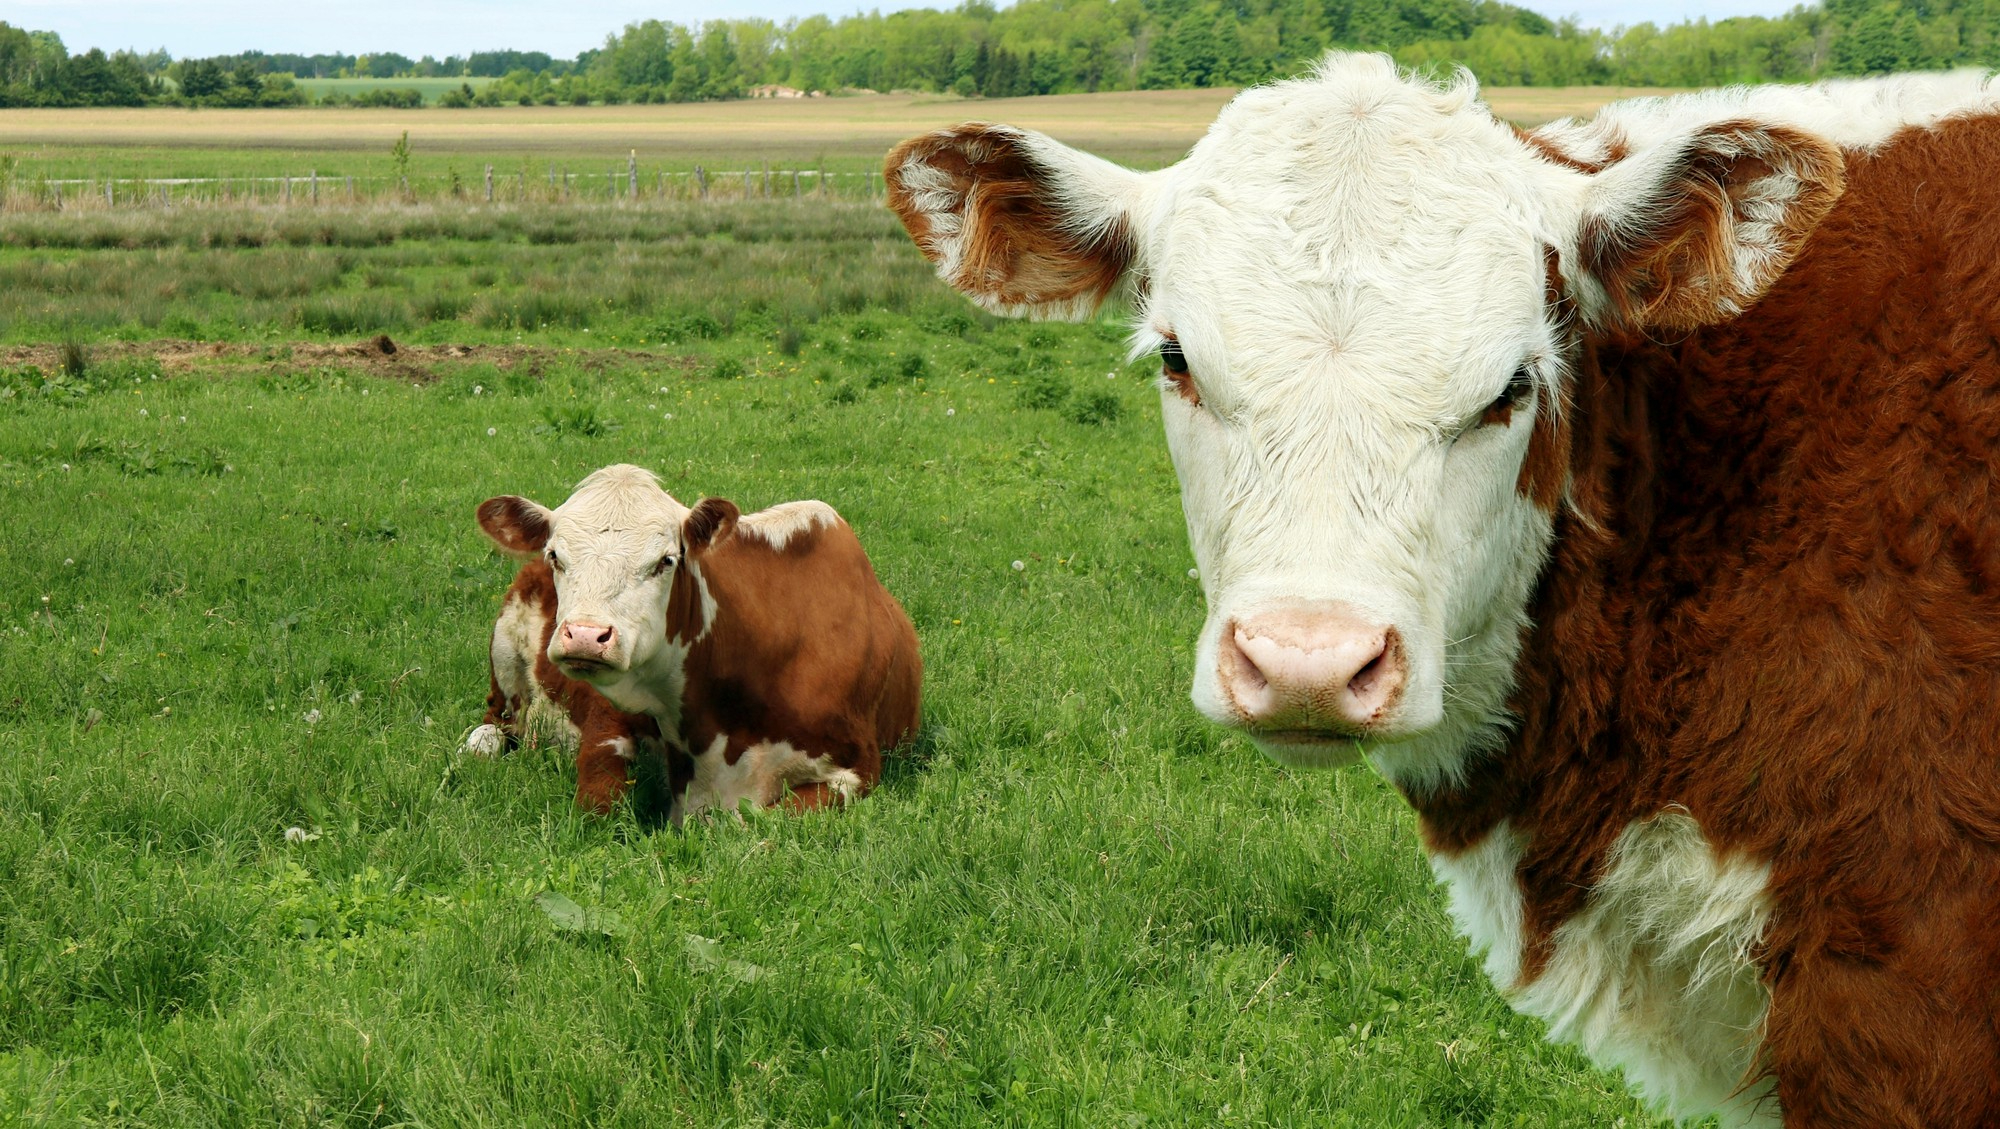 Bò Hereford, một trong các giống bò được nuôi tại Đan Mạch. Ảnh: Freepik